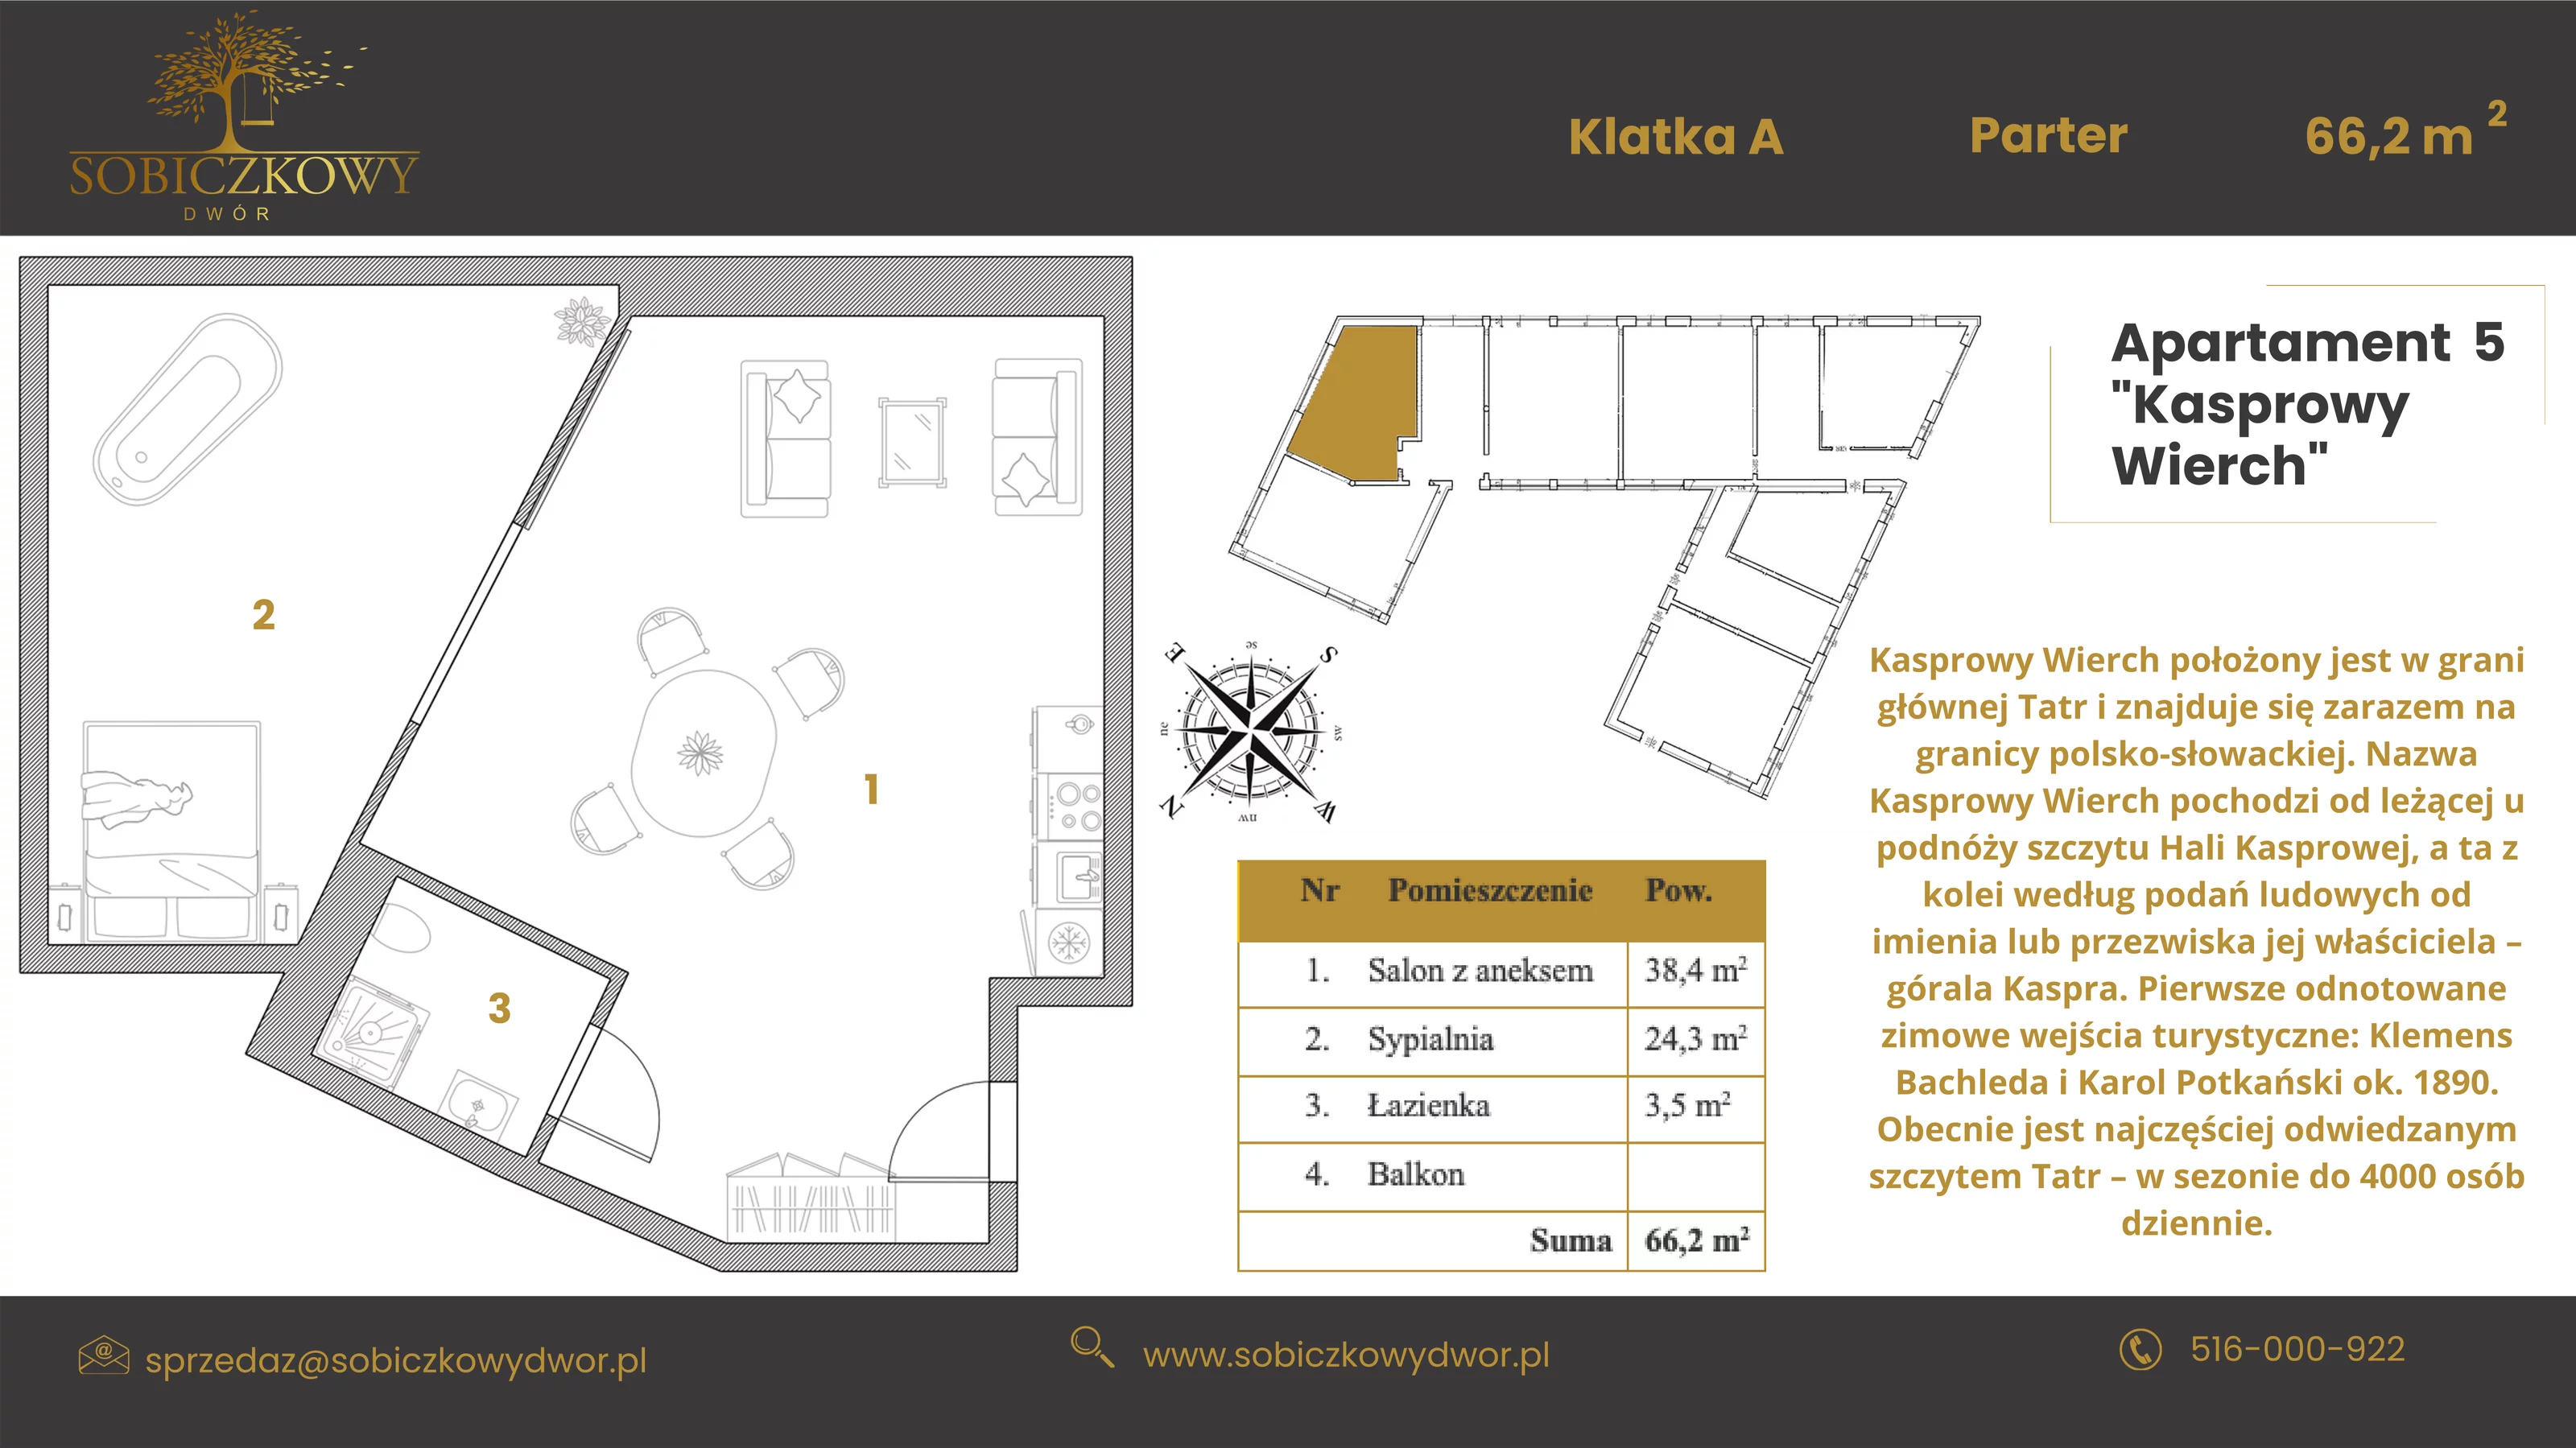 Apartament 66,20 m², parter, oferta nr 5 "Kasprowy Wierch", Sobiczkowy Dwór, Kościelisko, ul. Sobiczkowa Bór 1